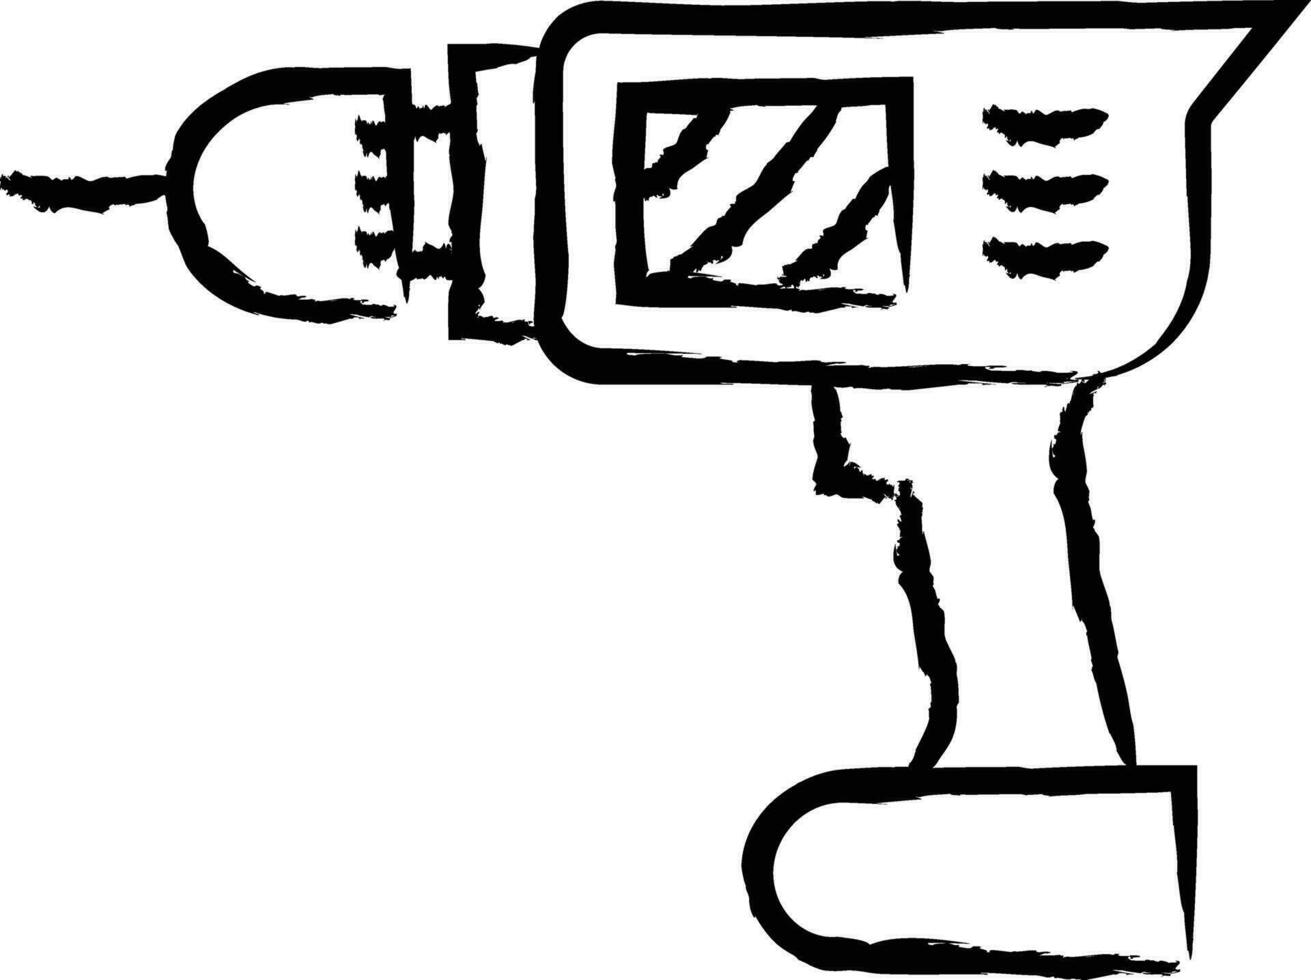 Drill hand drawn vector illustration